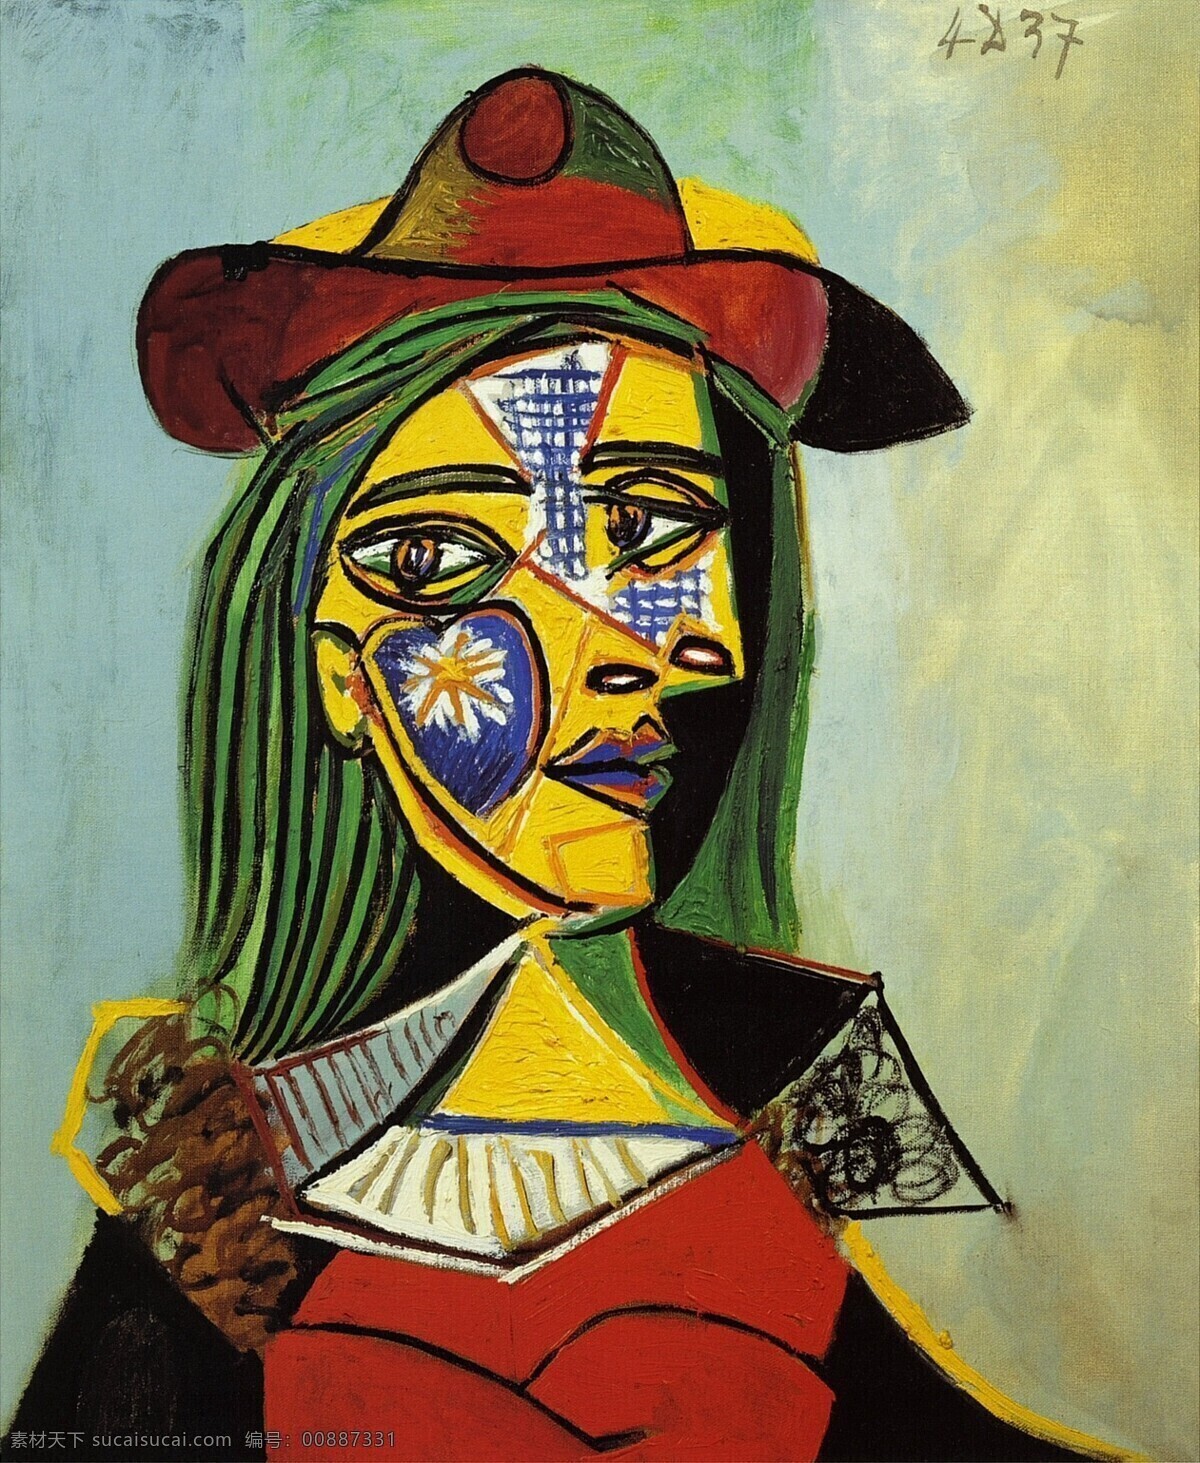 fourrure 西班牙 画家 巴勃罗 毕加索 抽象 油画 人物 人体 装饰画 en col et chapeau au femme 1937 装饰素材